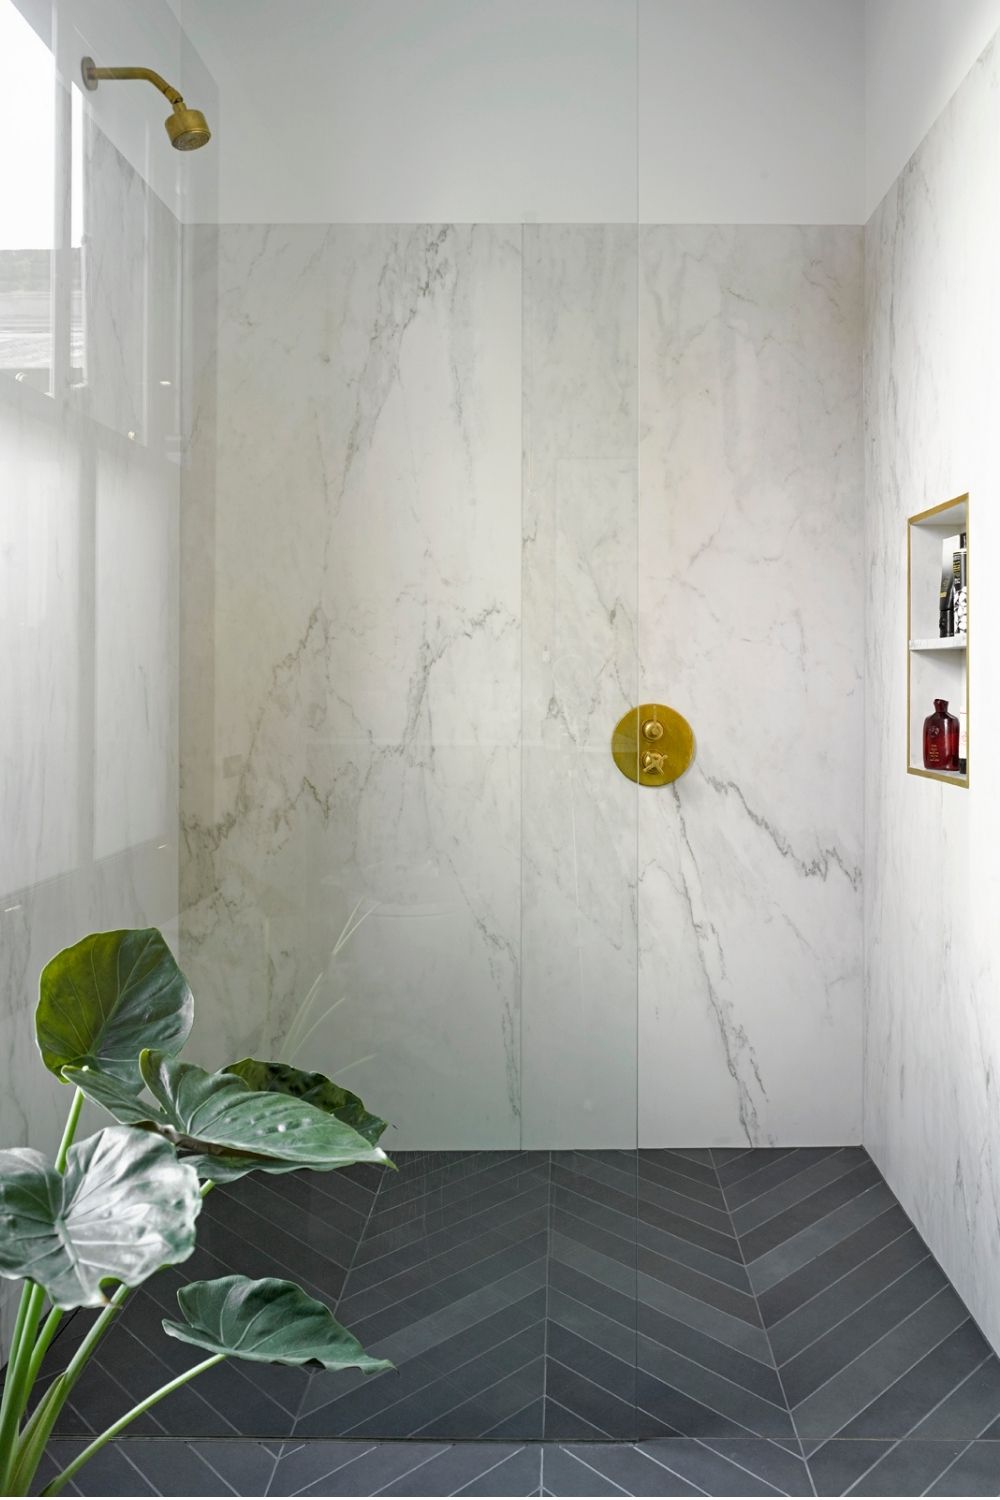 evoke projects ltd bespoke shower room